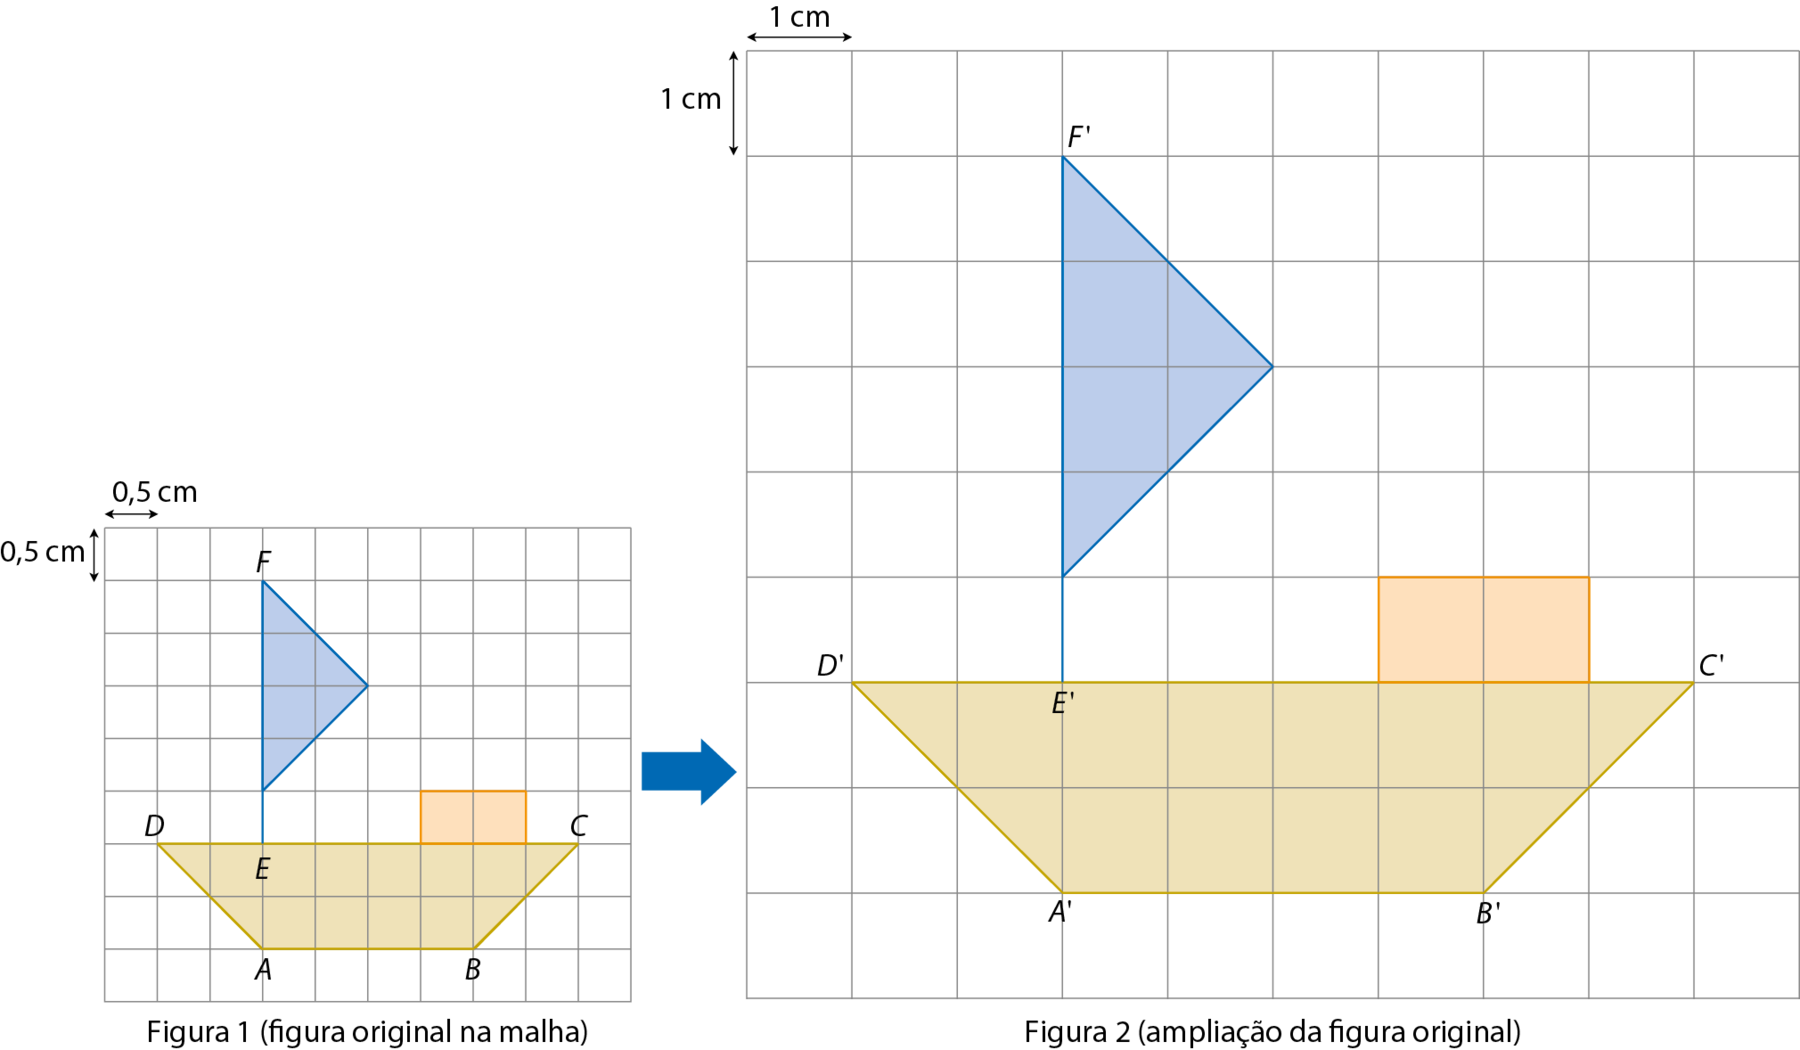 Esquema. Figura 1, abre parênteses figura original na malha fecha parênteses. Mesma figura anterior representada na malha quadriculada. No canto superior esquerdo da malha, cota acima do lado do quadradinho indicando lado de medida 0 vírgula 5 centímetros e cota a esquerda do lado do quadradinho indicando lado de medida 0 vírgula 5 centímetros.
Na figura, os vértices do trapézio estão indicados pelos pontos A, B, C e D. O lado AB é a base menor e mede 4 unidades. O lado DC é a base maior e mede 8 unidades. O ponto E está no lado DC, 2 unidades acima do ponto A e duas unidades a direita do ponto D. 
O triângulo tem um vértice da base nomeado F que está 5 unidades acima do ponto E e o outro vértice da base está uma unidade acima do ponto E. O terceiro vértice do triângulo está duas unidades à direita da base e três unidade acima do ponto E.
O retângulo é formado por 2 quadradinhos da malha e está localizado uma unidade à esquerda do ponto C acima do trapézio.
Seta azul indicando para a malha ampliada a direita.
Caixa com texto: Segundo: Aumentamos o quadradinho da malha na proporção desejada. Nesse caso, dobramos a medida de comprimento do lado do quadradinho.
Abaixo, Figura 2 abre parênteses, ampliação da figura original fecha parênteses.
Mesma figura anterior representada na malha quadriculada. No canto superior esquerdo da malha, cota acima do lado do quadradinho indicando lado de medida 1 centímetro e cota a esquerda do lado do quadradinho indicando lado de medida 1 centímetro.
Os pontos A linha, B linha, C linha, D linha, E linha, F linha estão, relativamente nas mesmas posições dos pontos A, B, C, D, E e F. respectivamente.